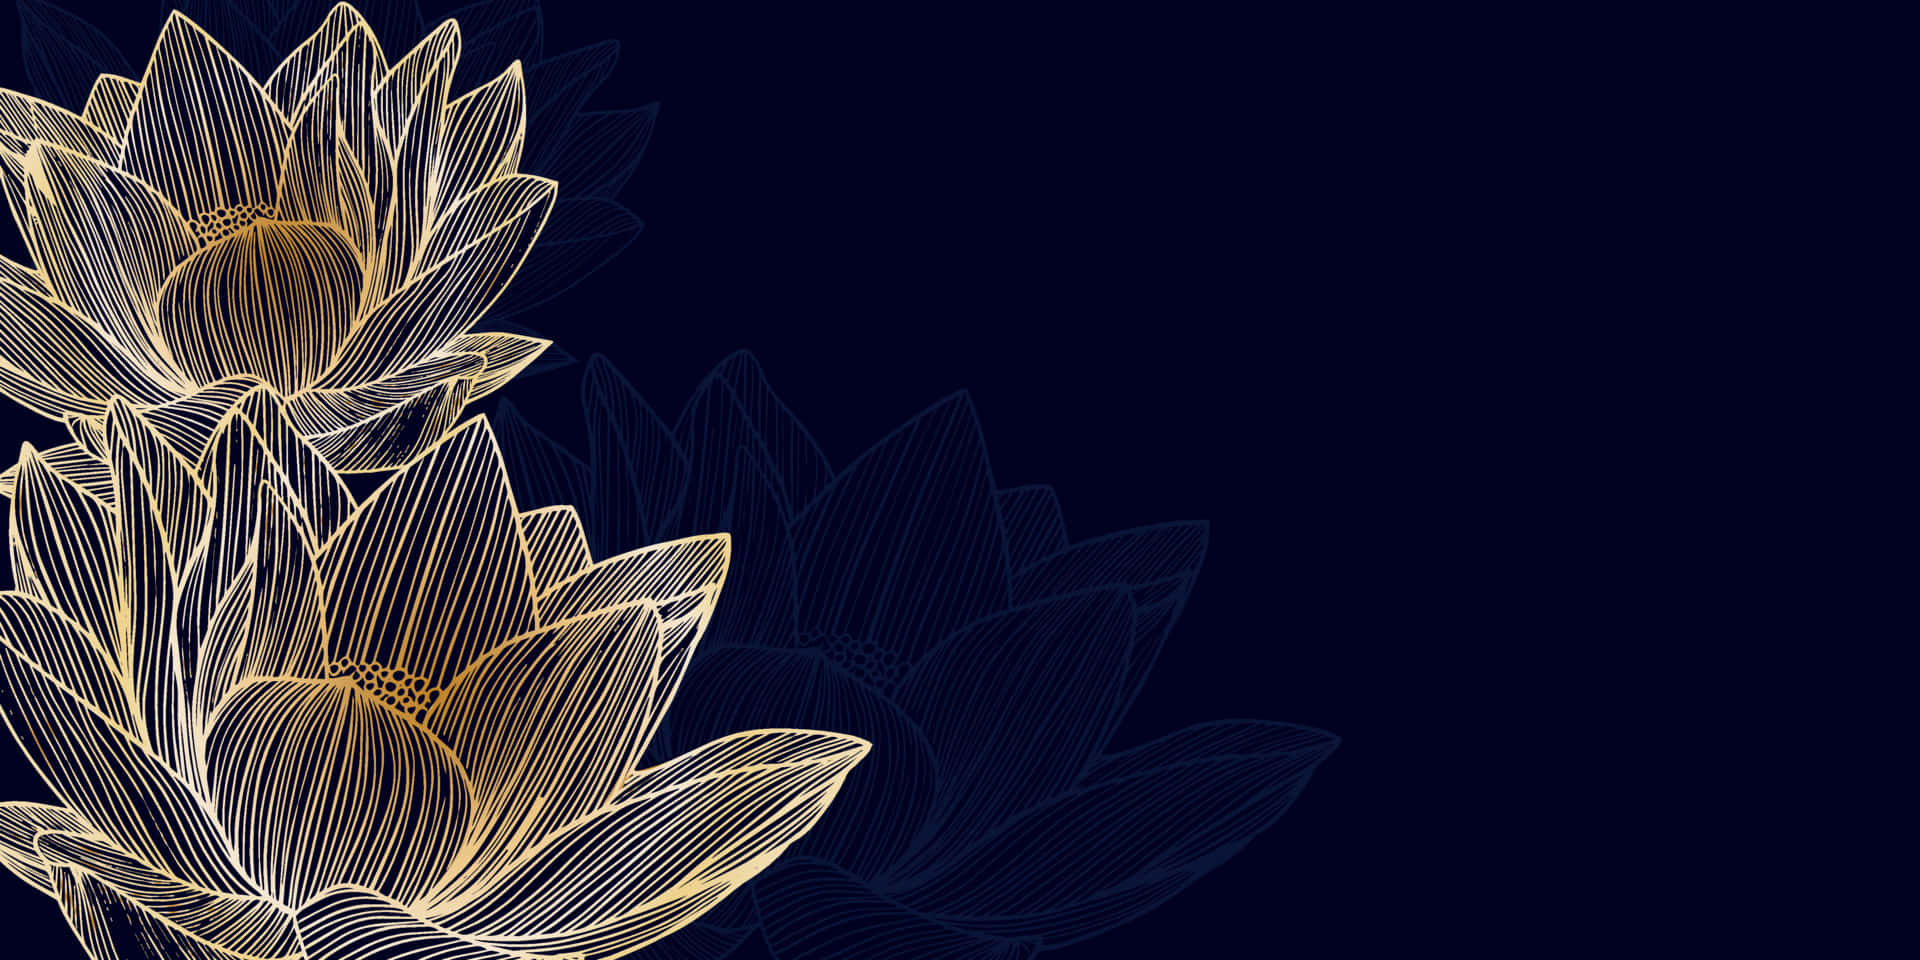 Etroligt Billede Af Lotusblomster, Der Blomstrer I En Sø For At Skabe En Atmosfære Af Ro